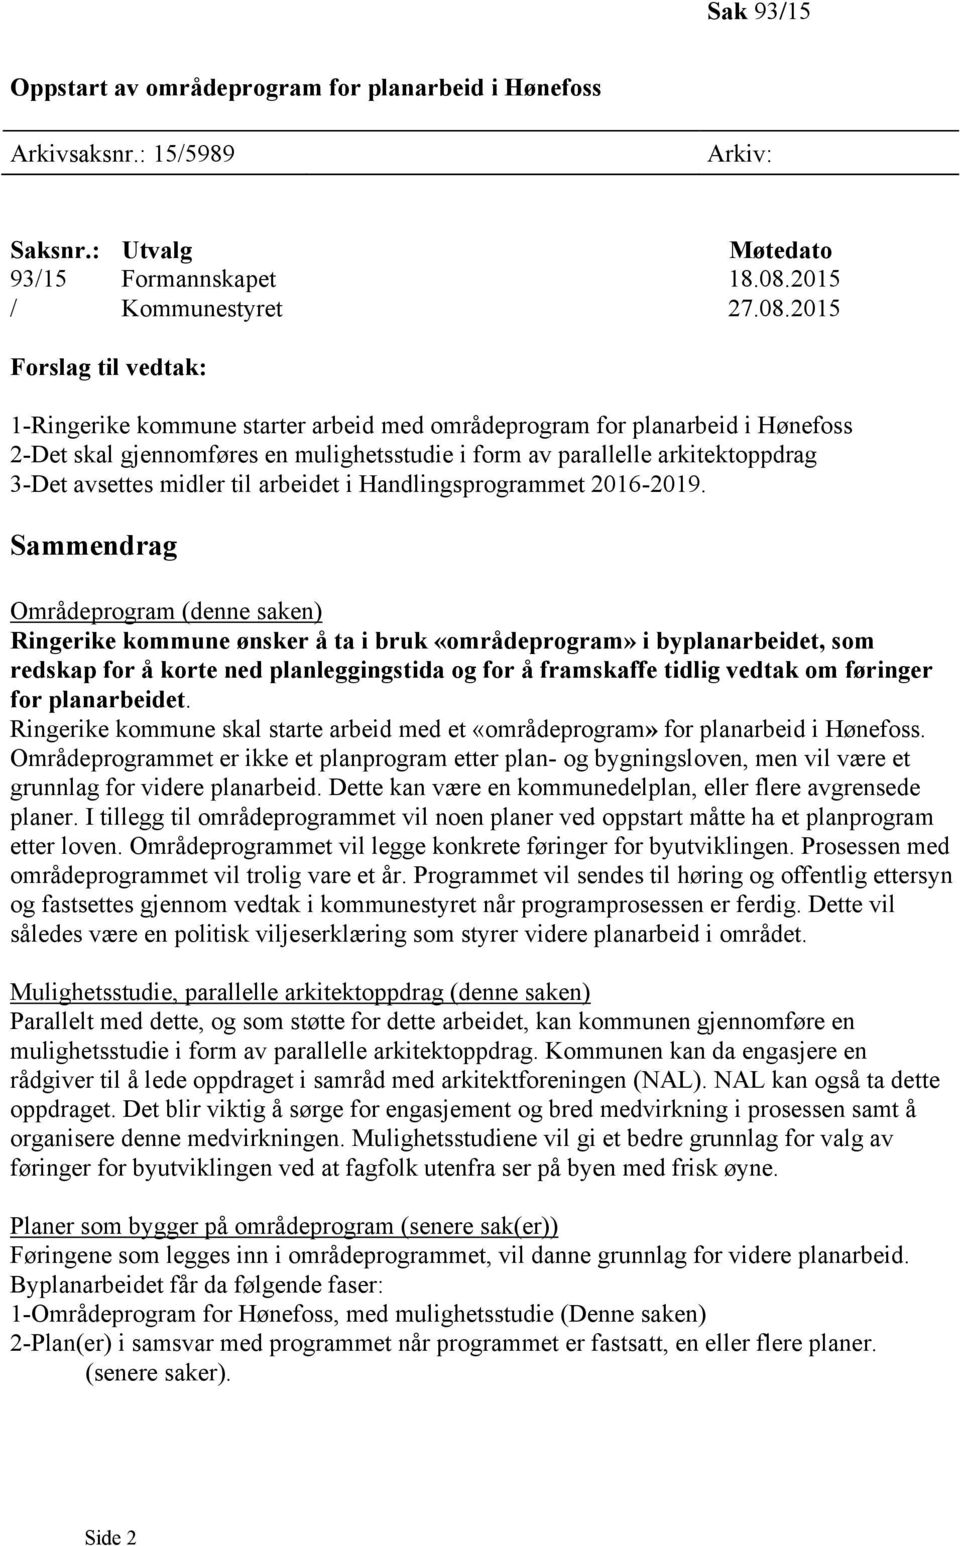 2015 Forslag til vedtak: 1-Ringerike kommune starter arbeid med områdeprogram for planarbeid i Hønefoss 2-Det skal gjennomføres en mulighetsstudie i form av parallelle arkitektoppdrag 3-Det avsettes